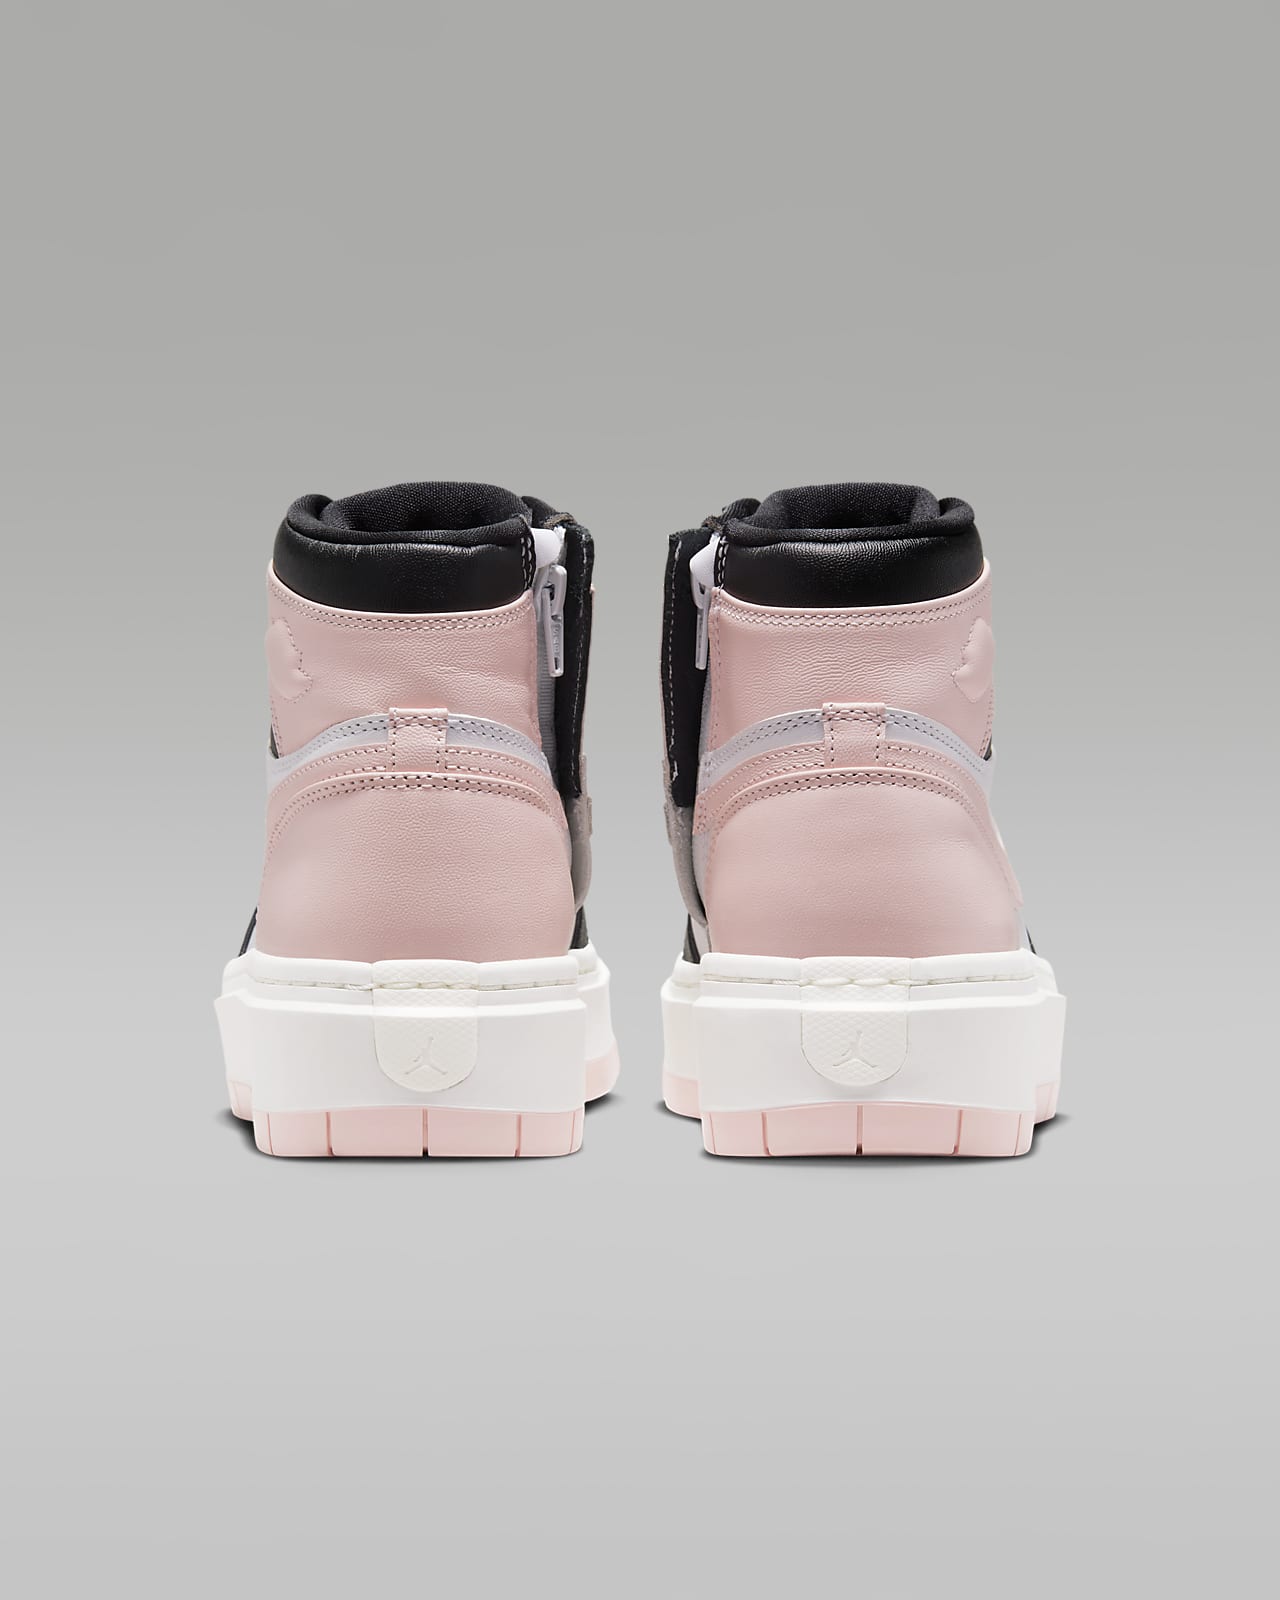 nike hypervenom jordan pink sneakers shoes sale